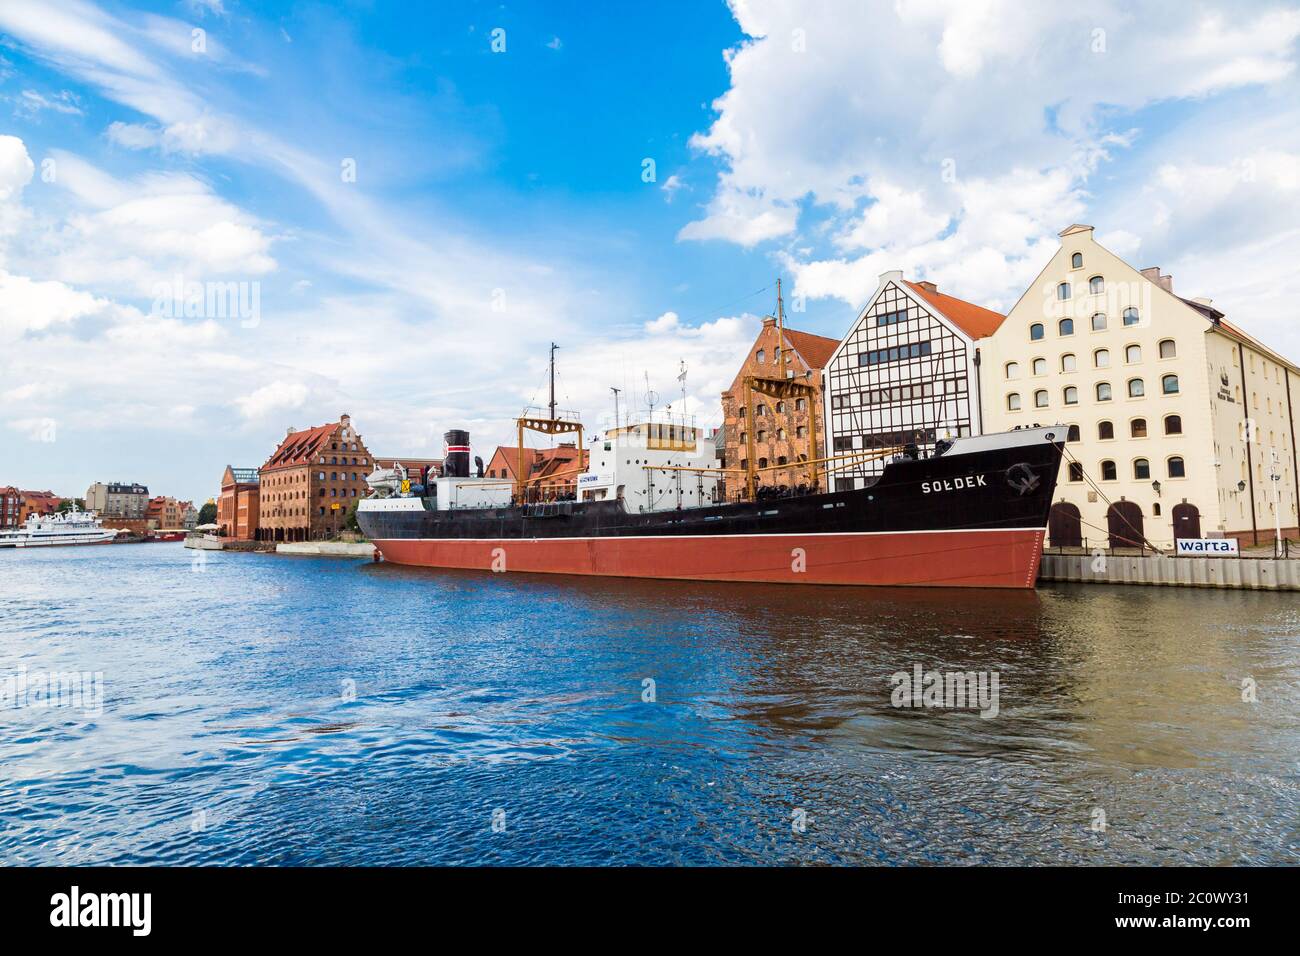 SS SOLDEK on Motlawa river in Gdansk Stock Photo